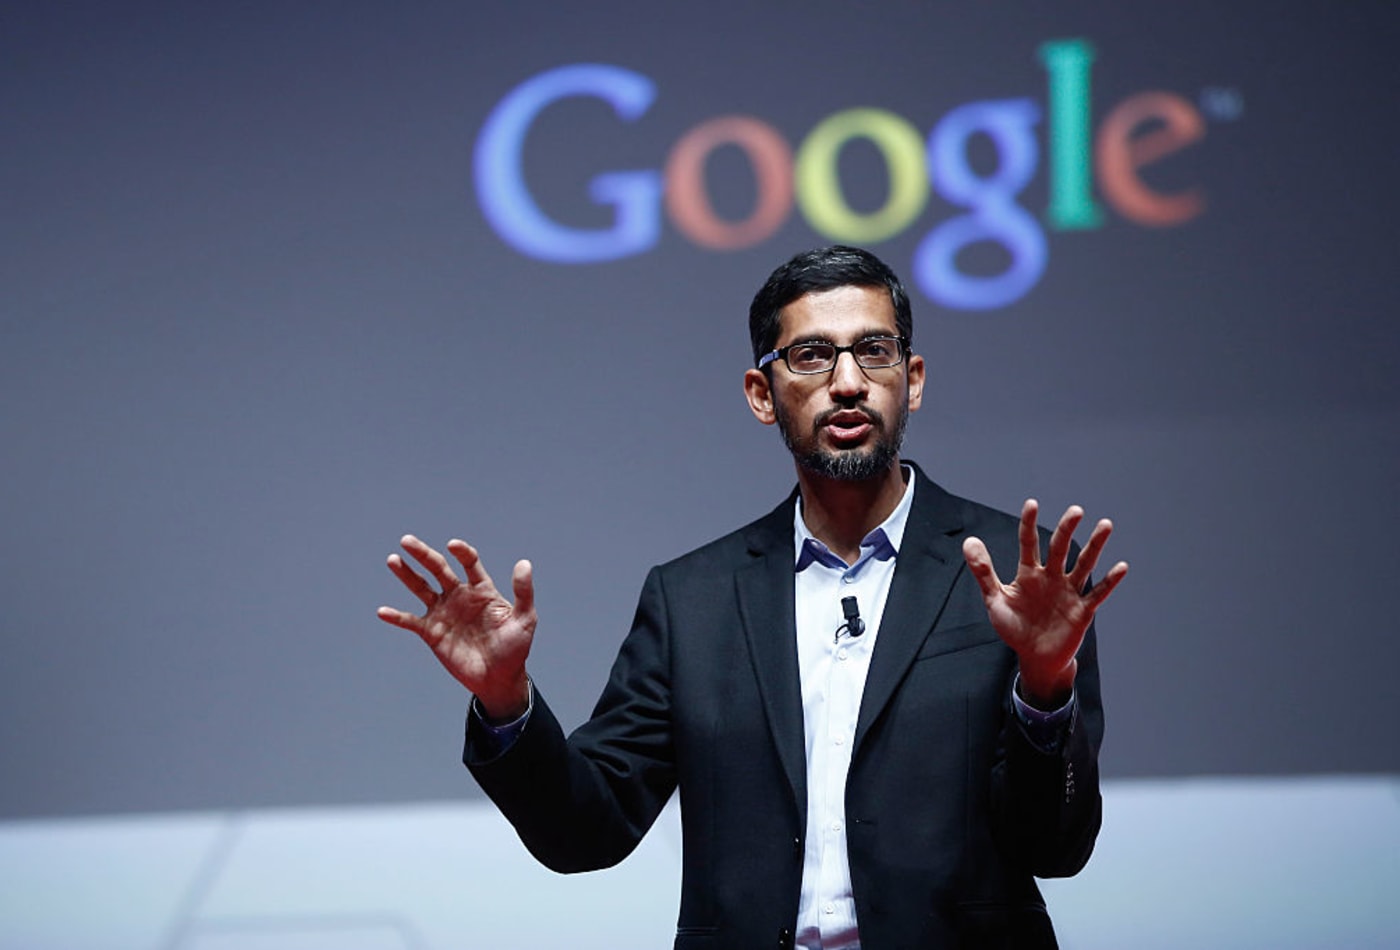 ਸੁੰਦਰ ਪਿਚਾਈ Google ਦੀ ਪੇਰੇਂਟ ਕੰਪਨੀ Alphabet ਦੇ ਨਵੇਂ CEO ਹੋਣਗੇ